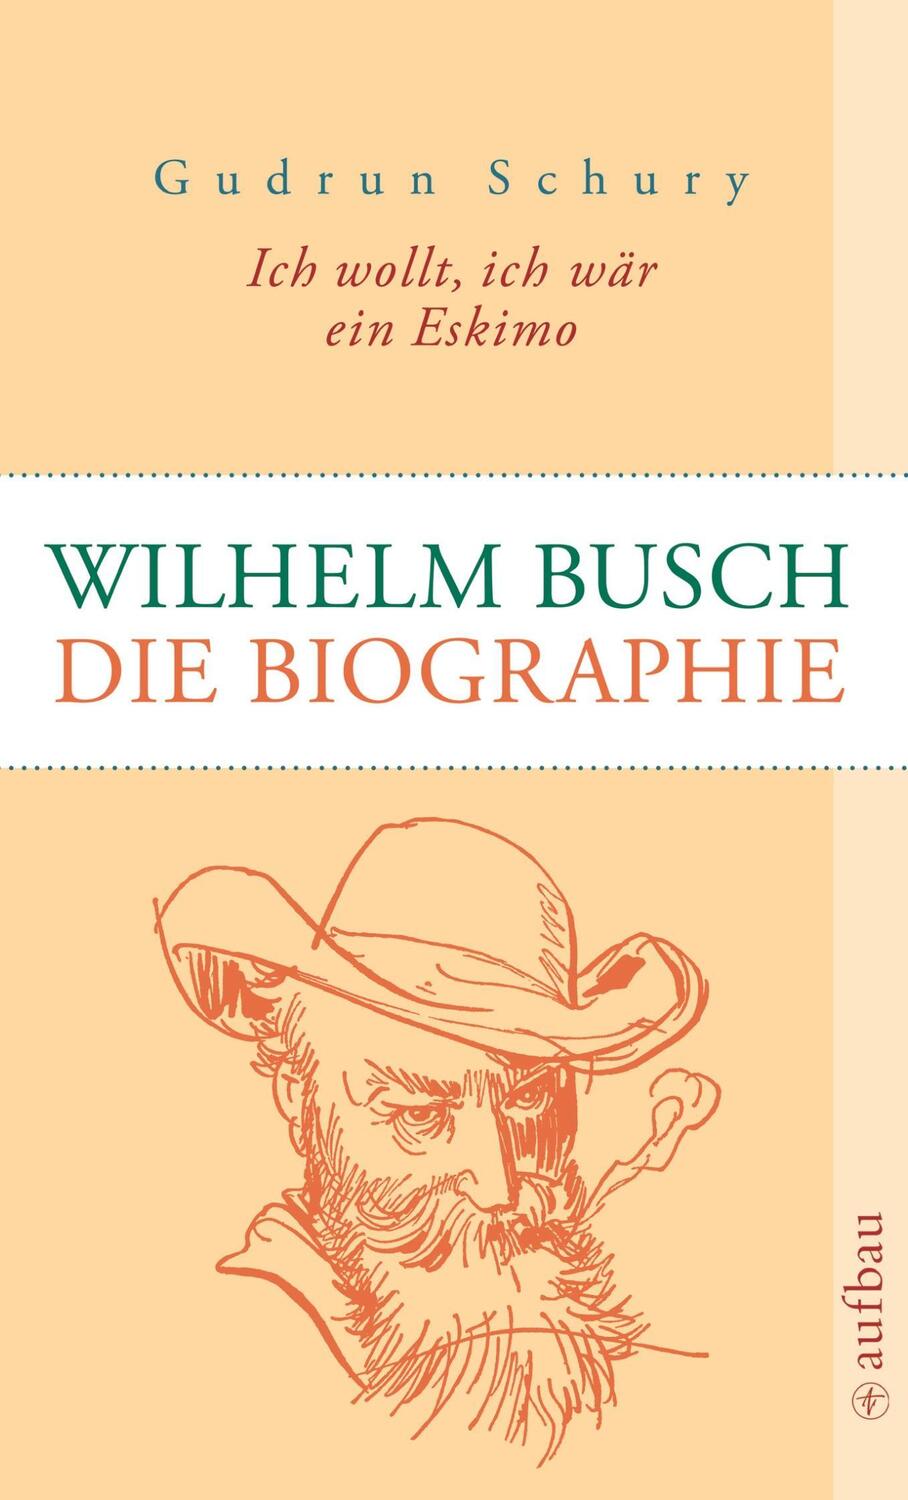 Cover: 9783746670713 | Ich wollt, ich wär ein Eskimo: Wilhelm Busch | Die Biographie | Schury